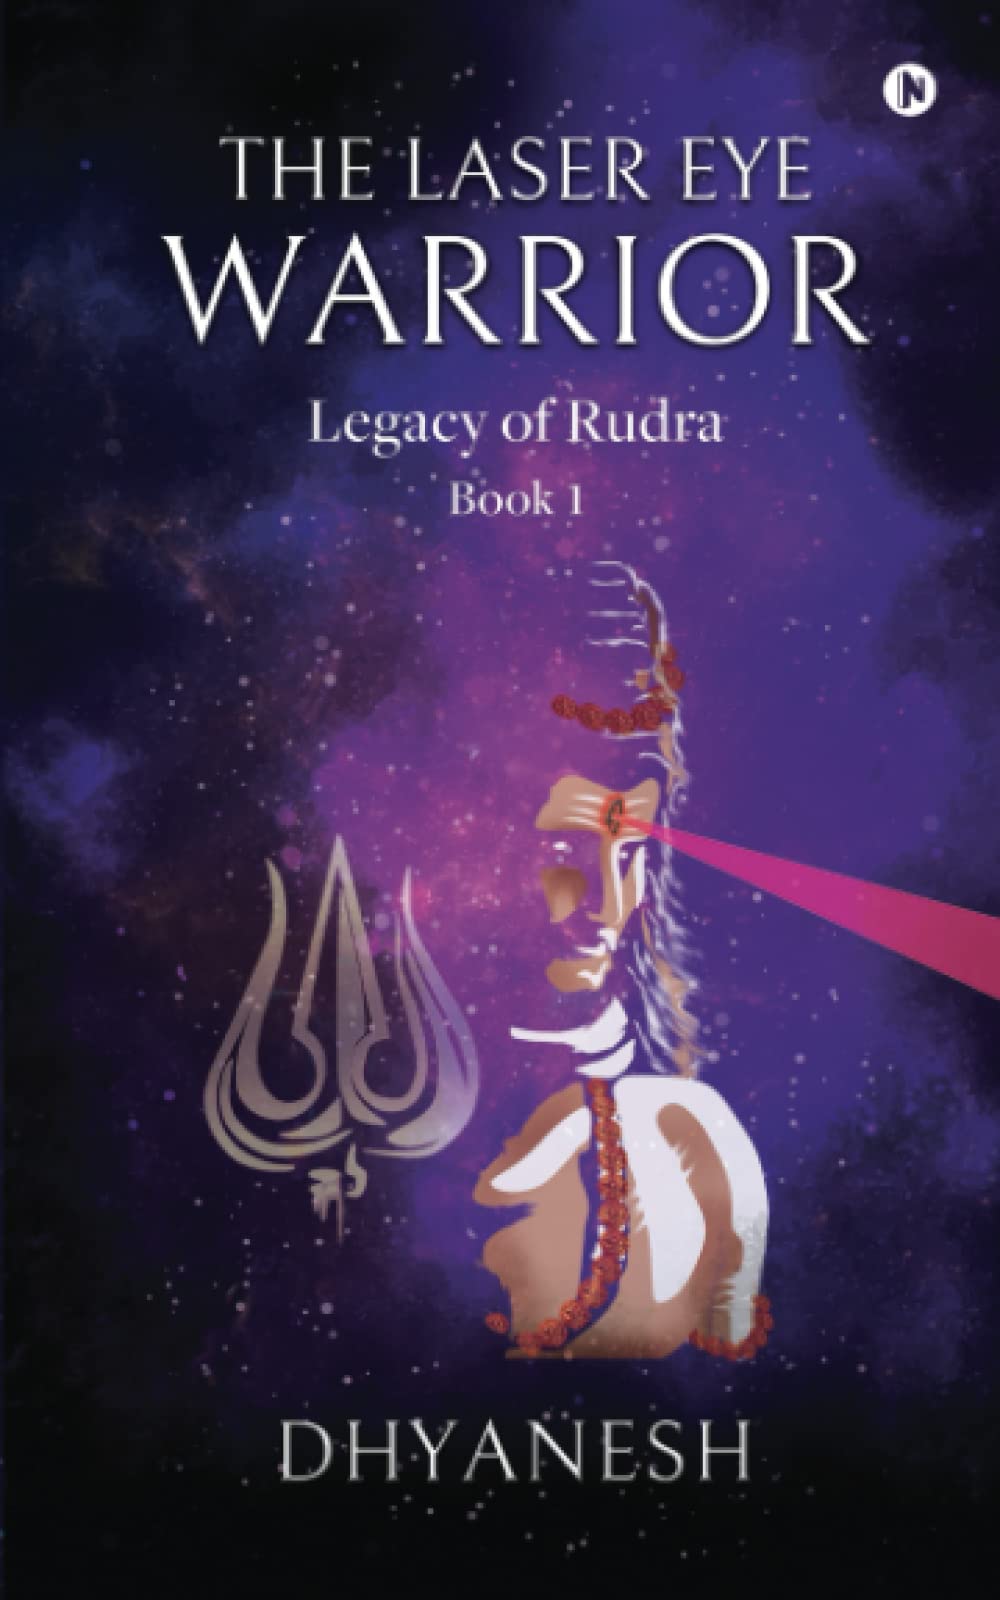 The Laser Eye Warrior: Legacy of Rudra by Dhyanesh Shankar